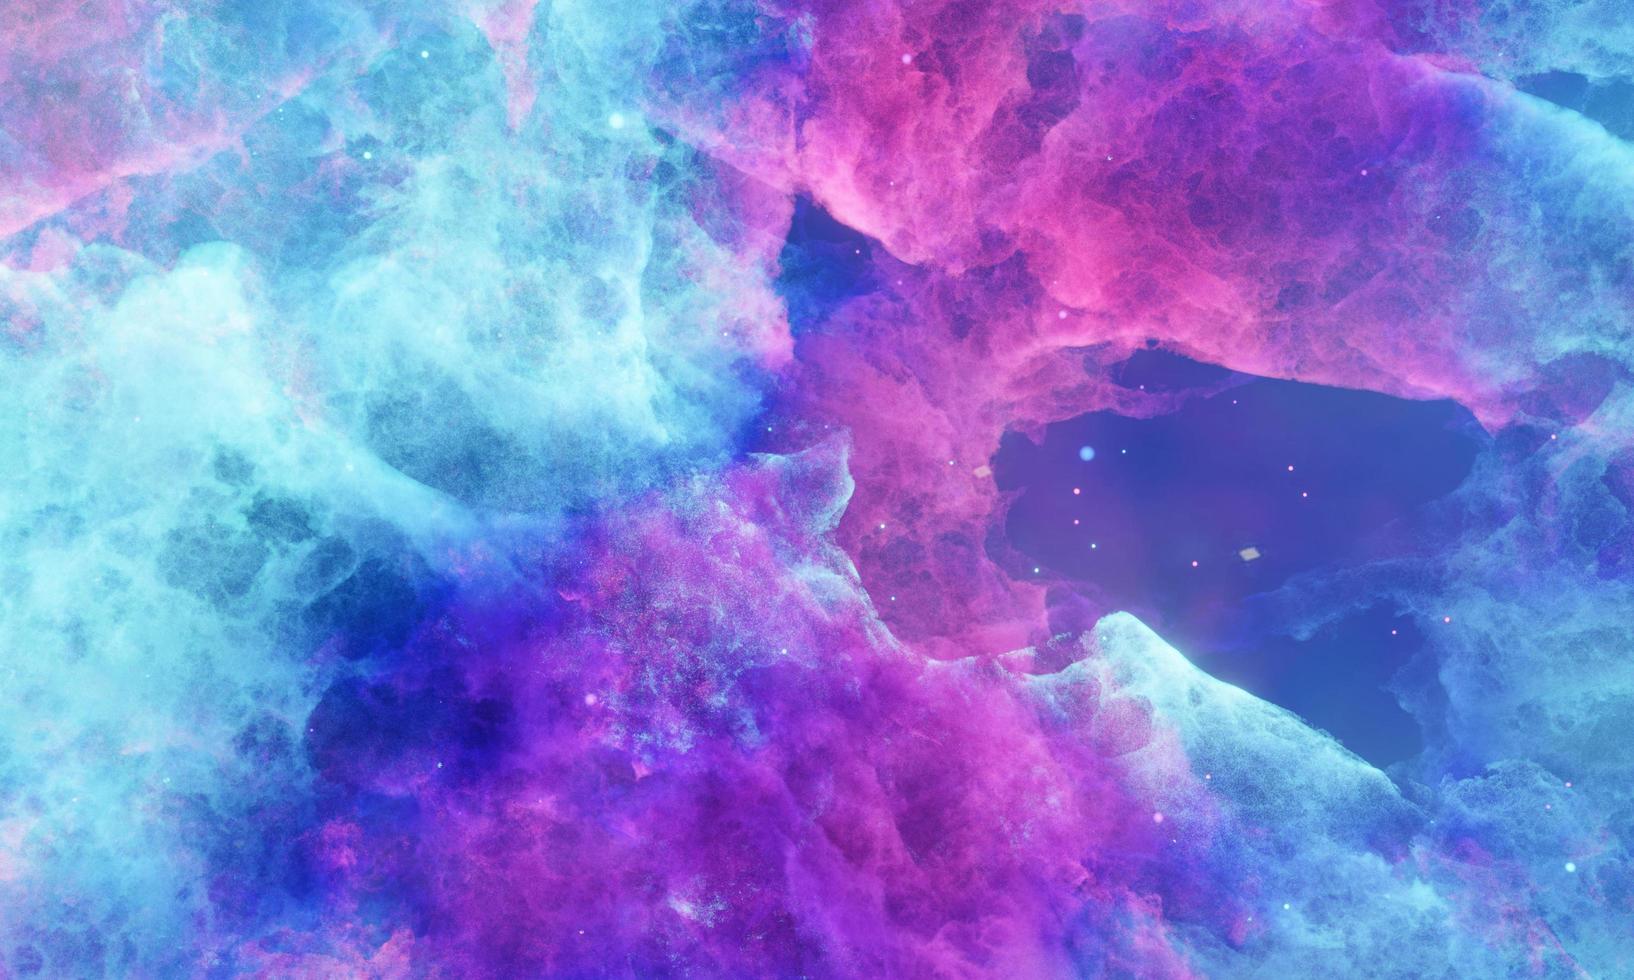 nuages d'aérosols, brume spatiale ou rayons cosmiques, rose, bleu pastel, ciel spatial avec de nombreuses étoiles. voyage dans l'univers. rendu 3d photo